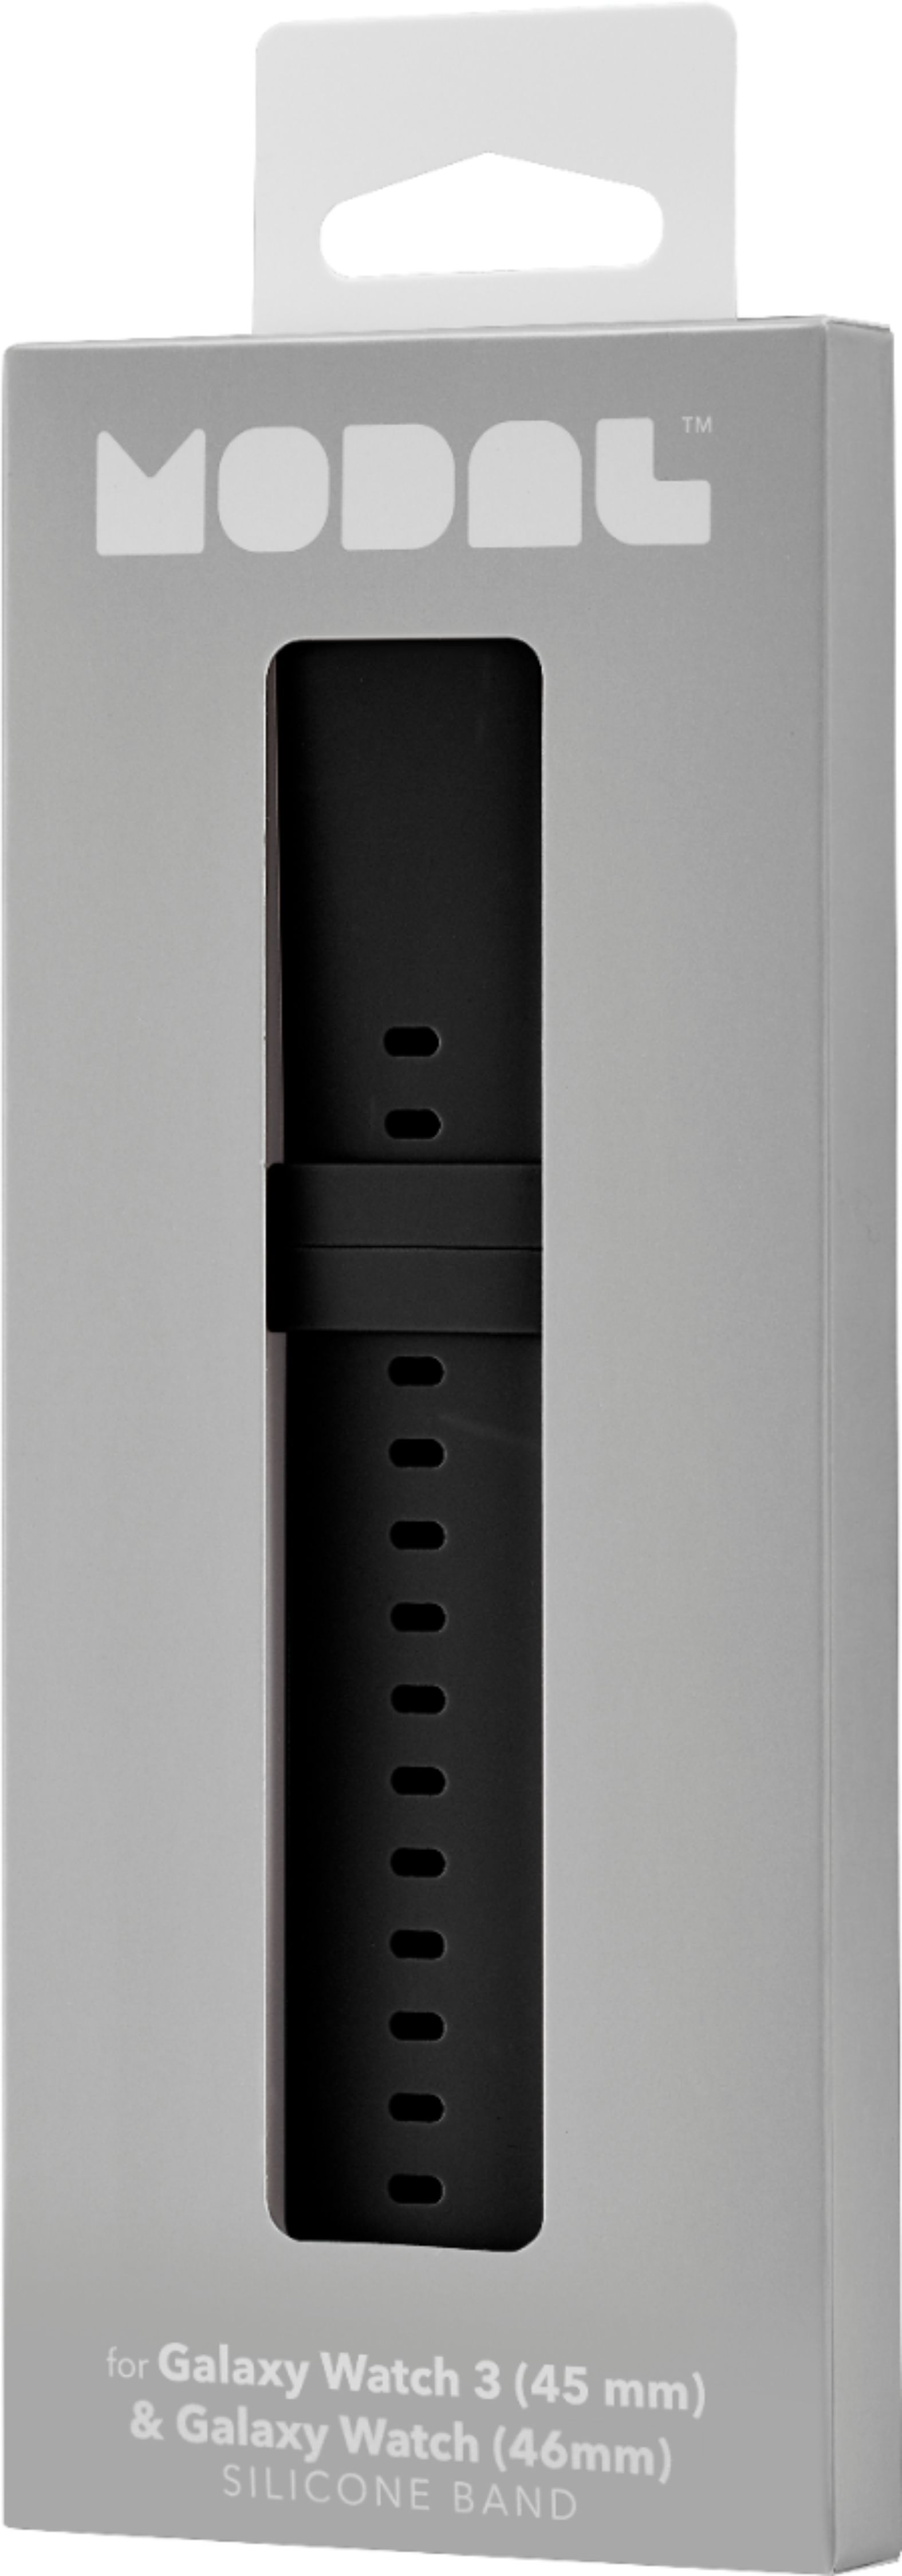 Modal™ Silicone Watch Band for Galaxy Watch3 (45mm) Black MD-SGB22SBLK ...